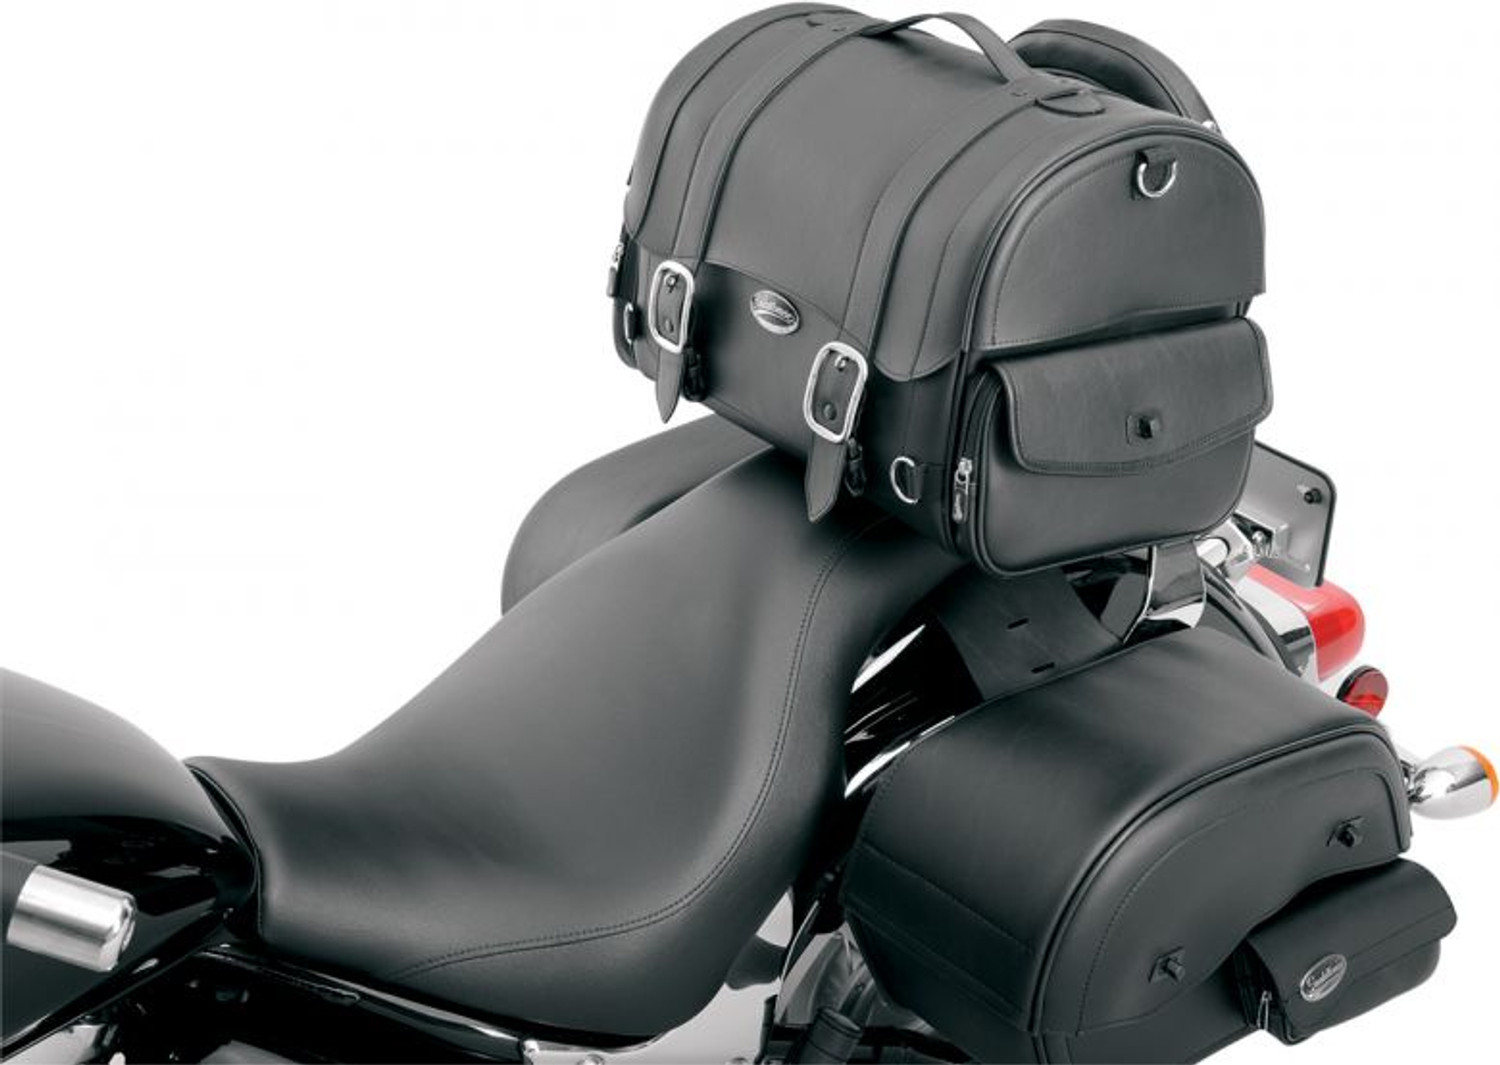 Saddlemen Desperado Express Leather Tail Bag - Rigid Motorcycle Luggage Bag